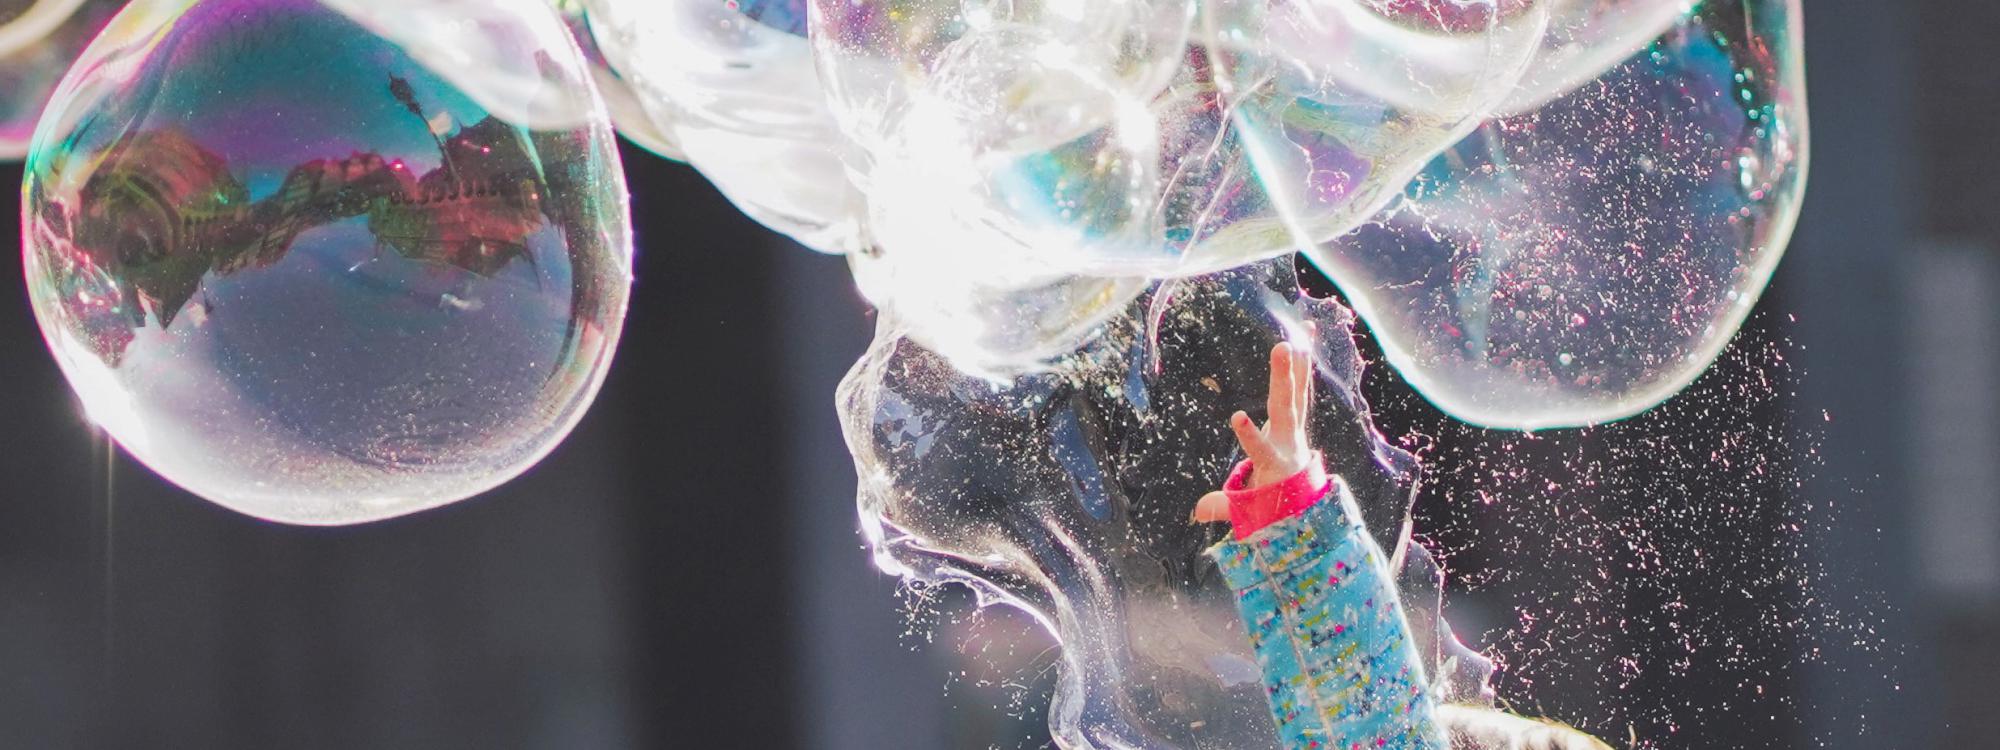 Kind hüpft nach großen Seifenblasen